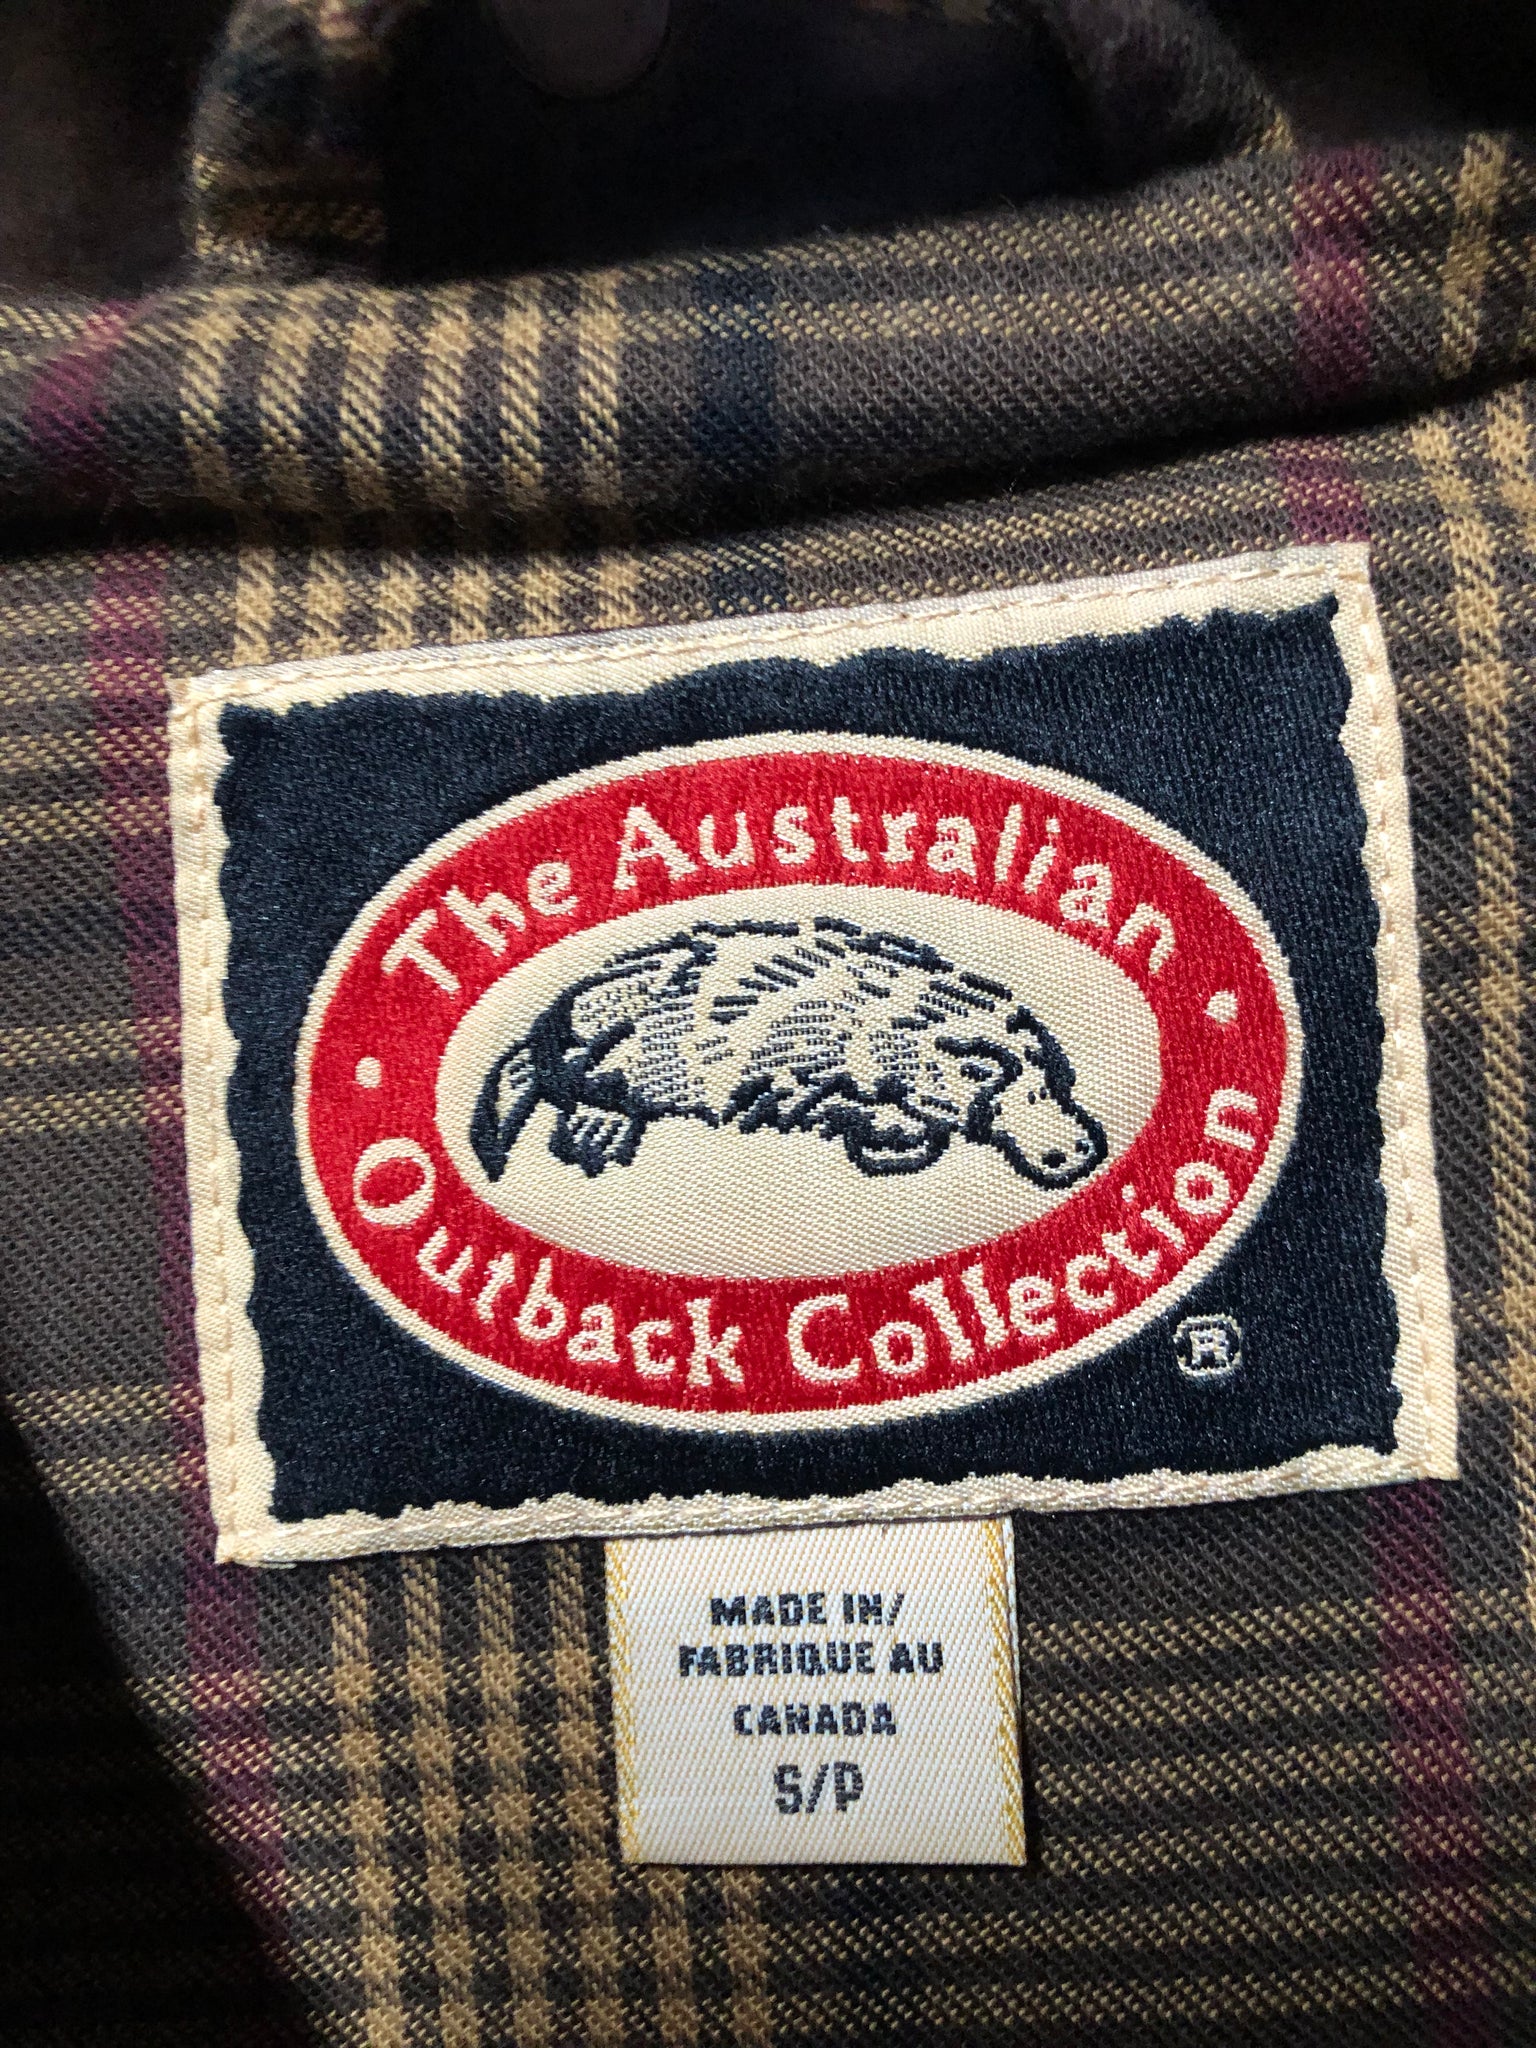 2022年春夏再入荷 THE Australian Australian outback collection